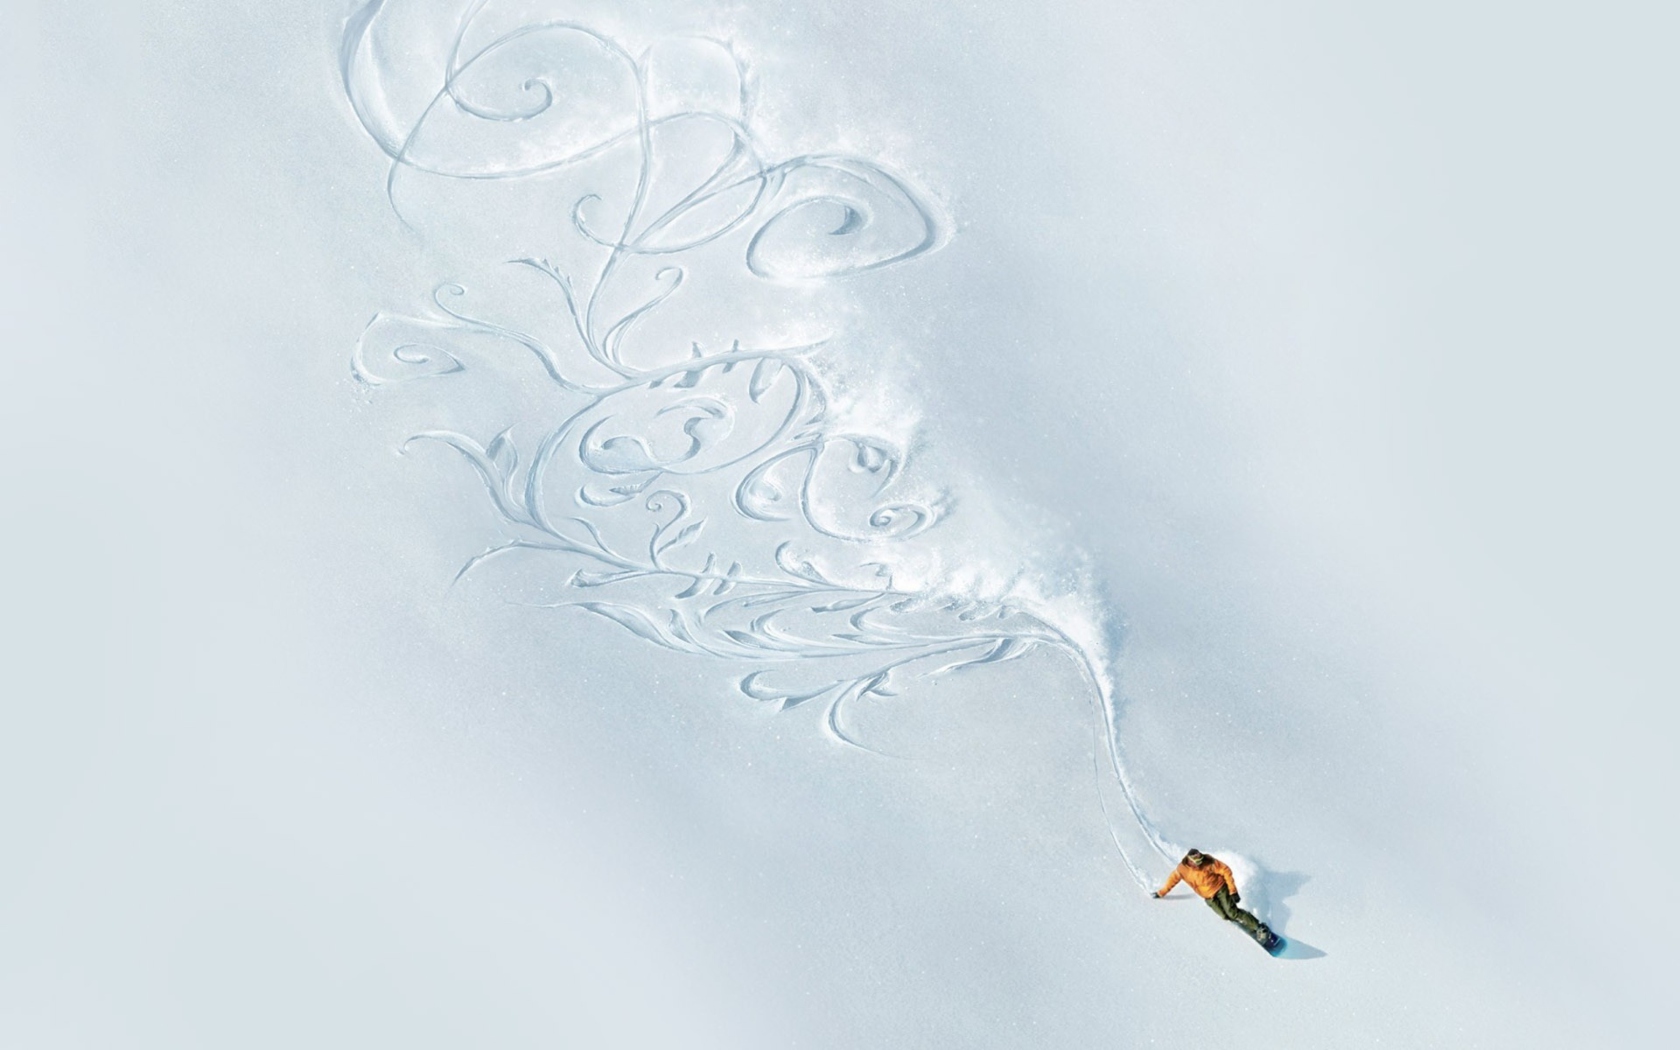 Snowboarding Art wallpaper 1680x1050